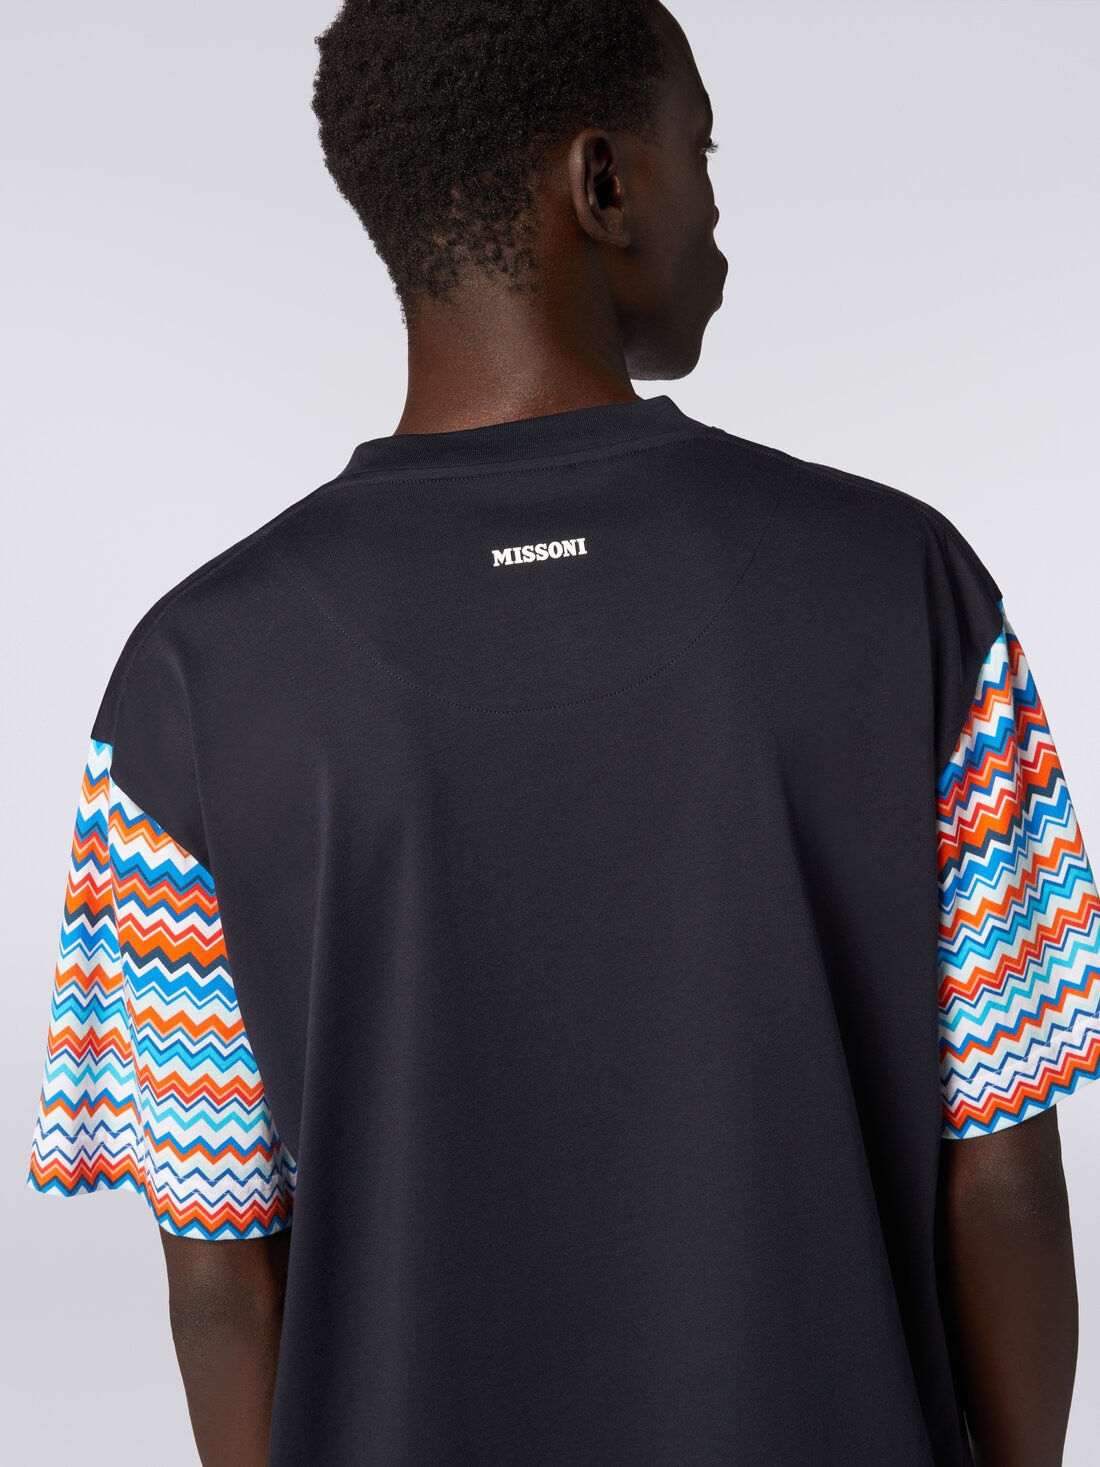 T-shirt oversize in cotone con inserti zig zag, Multicolore  - US24SL0BBJ00J1S72E1 - 4